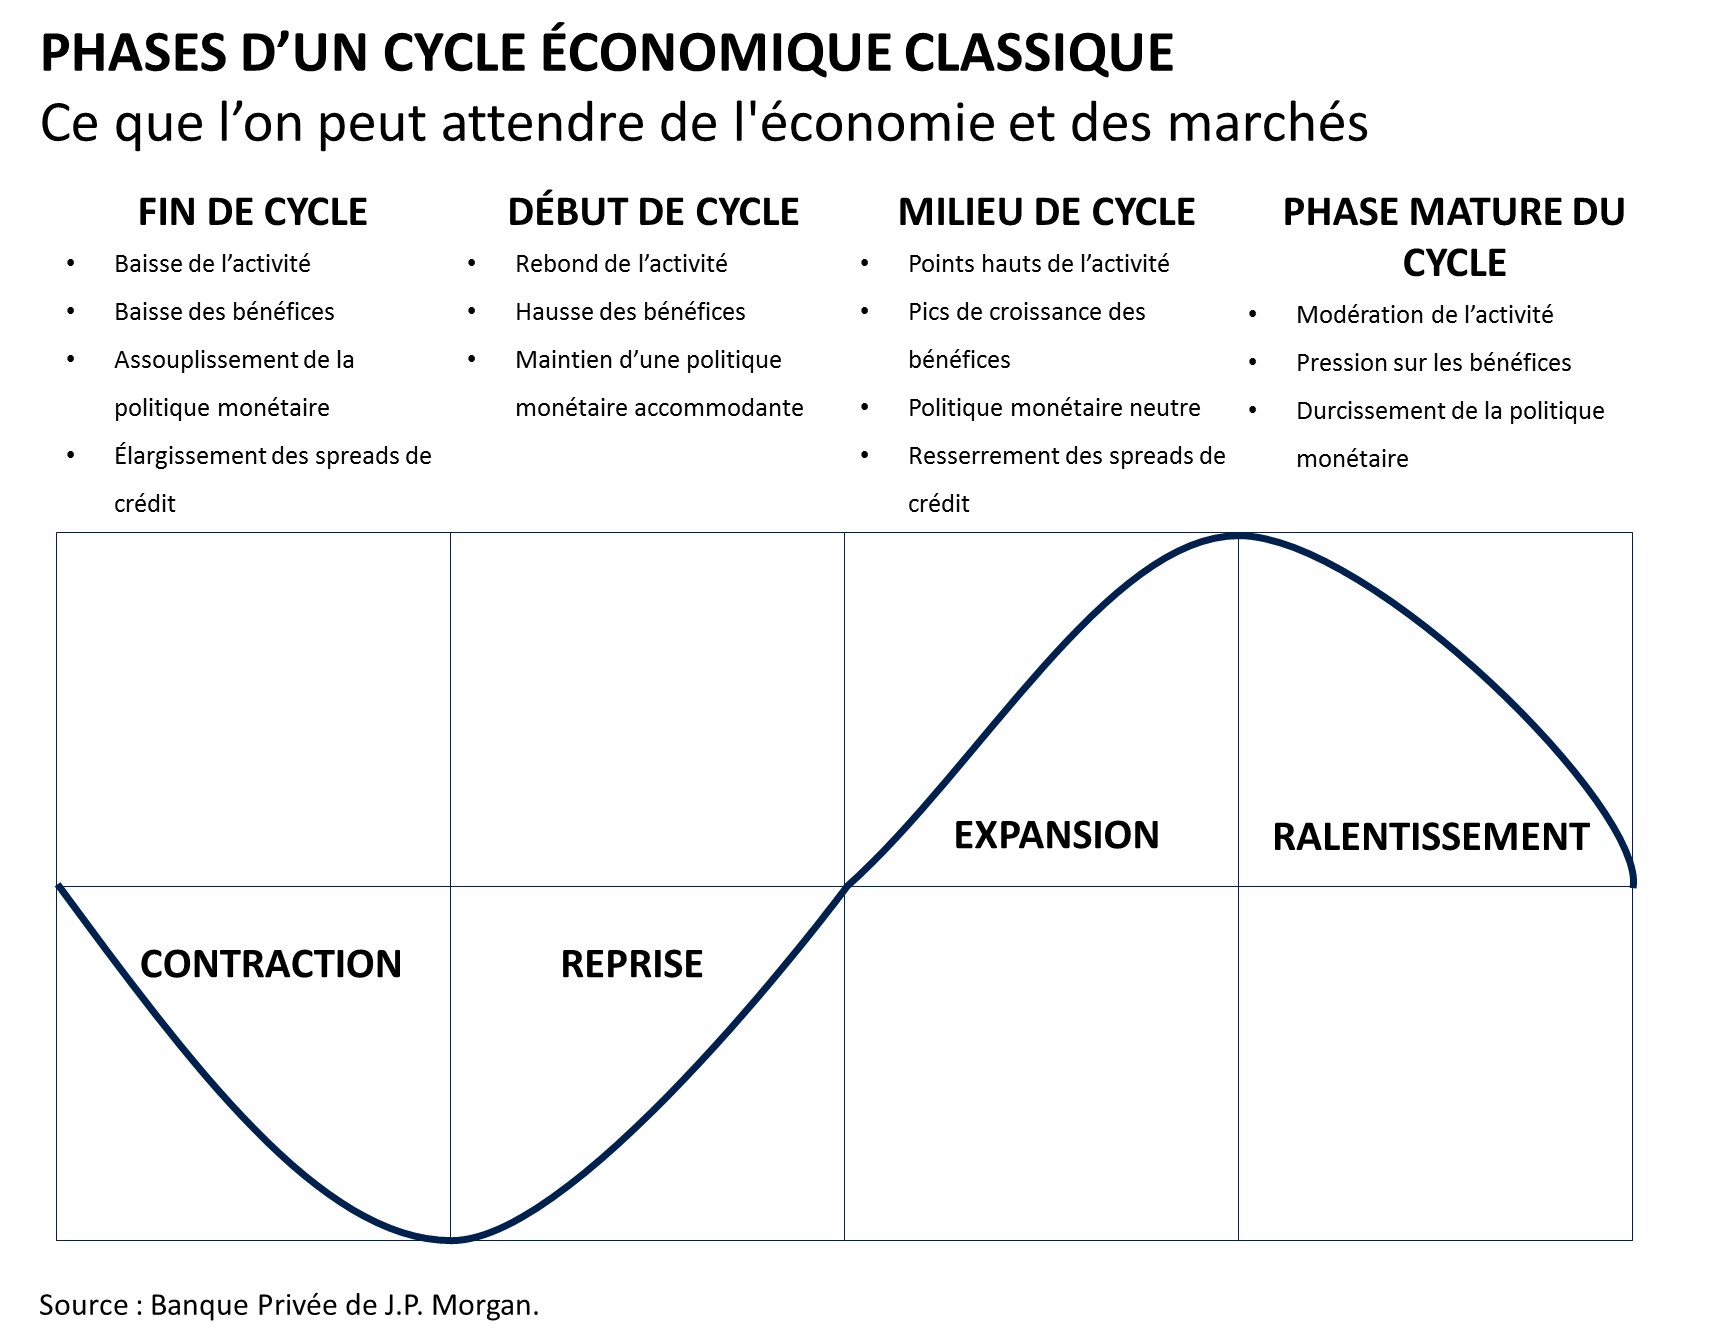 Phases d’un cycle économique classique